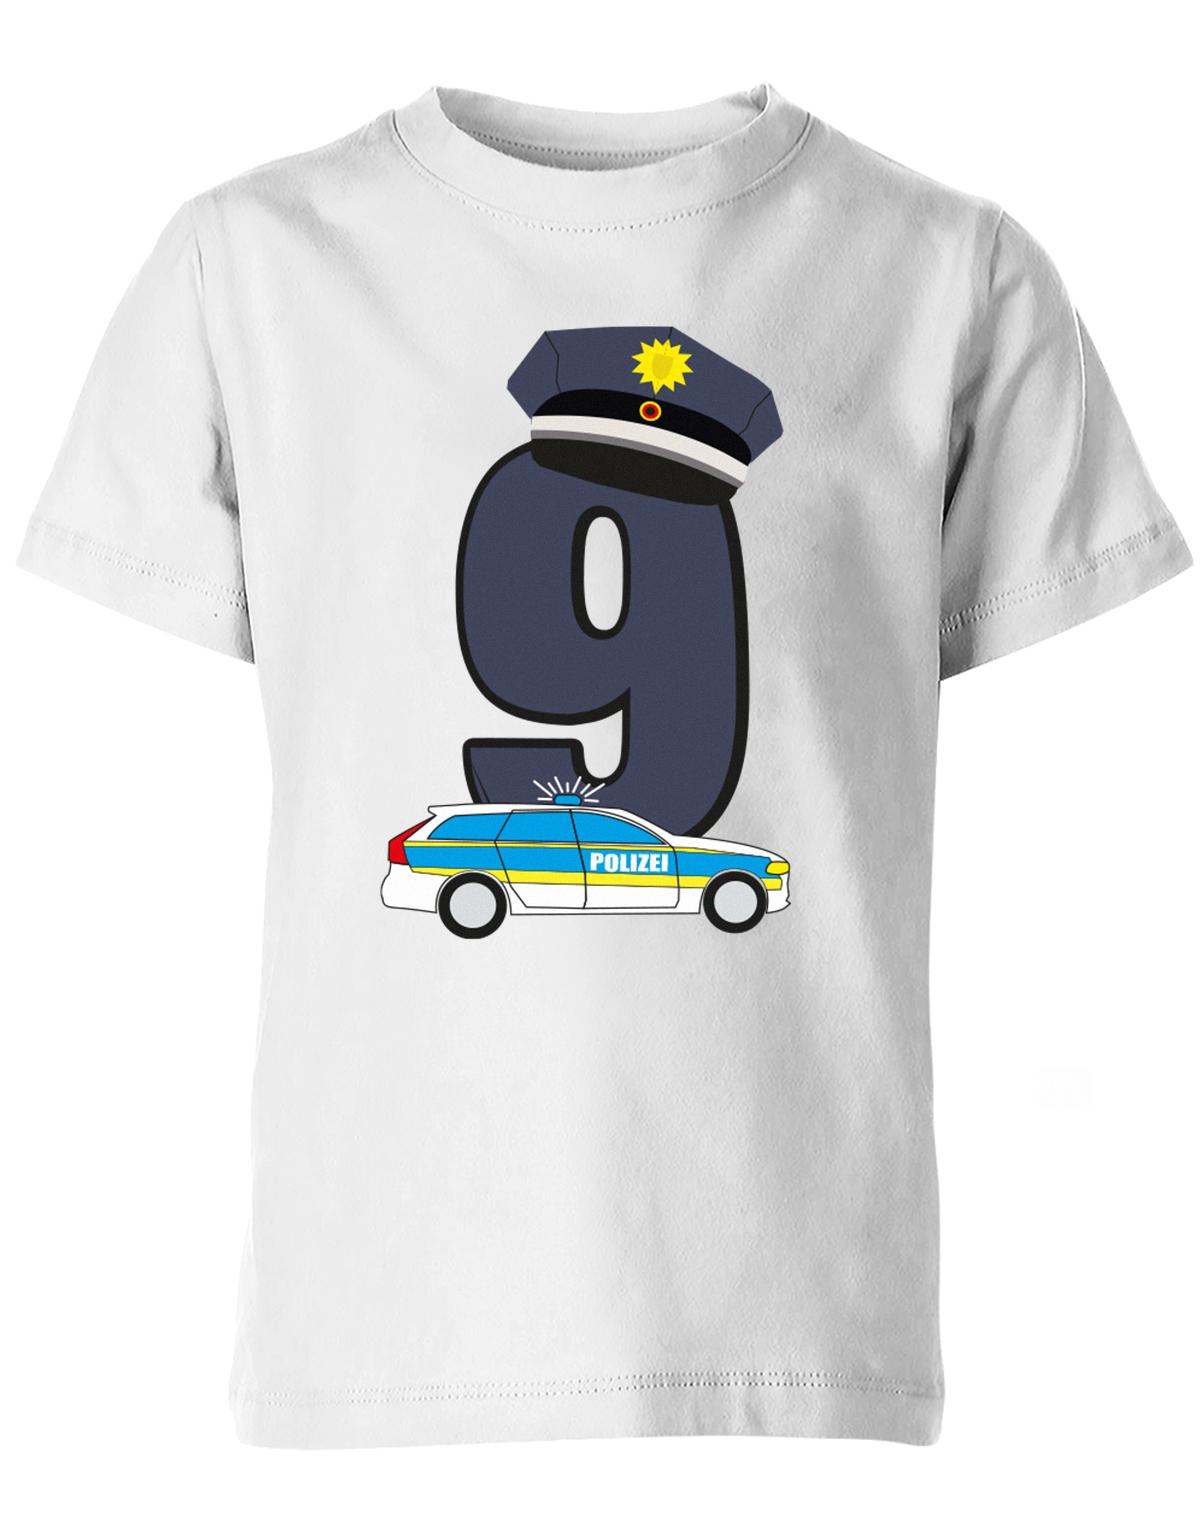 ich-bin-9-polizei-geburtstag-kinder-shirt-weiss